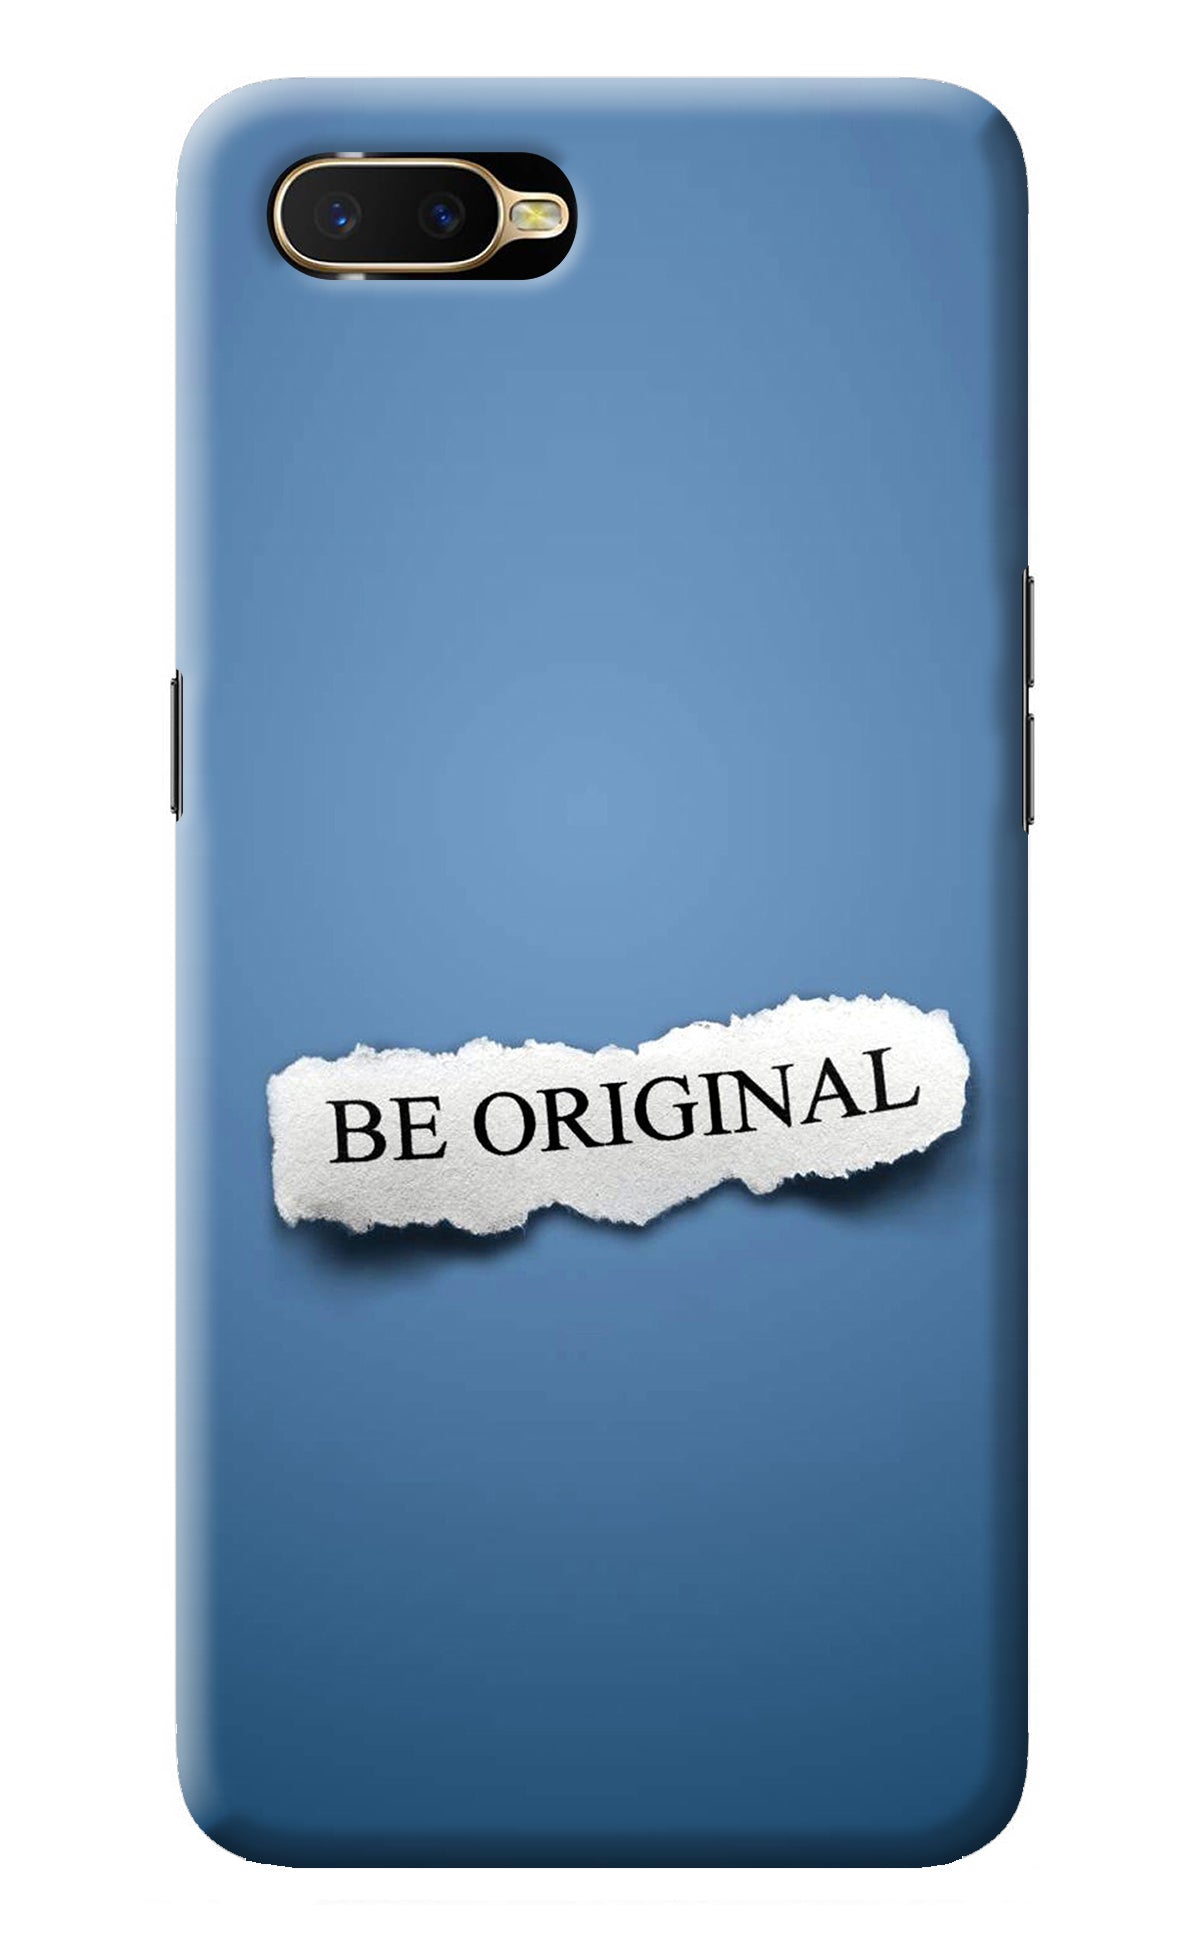 Be Original Oppo K1 Back Cover